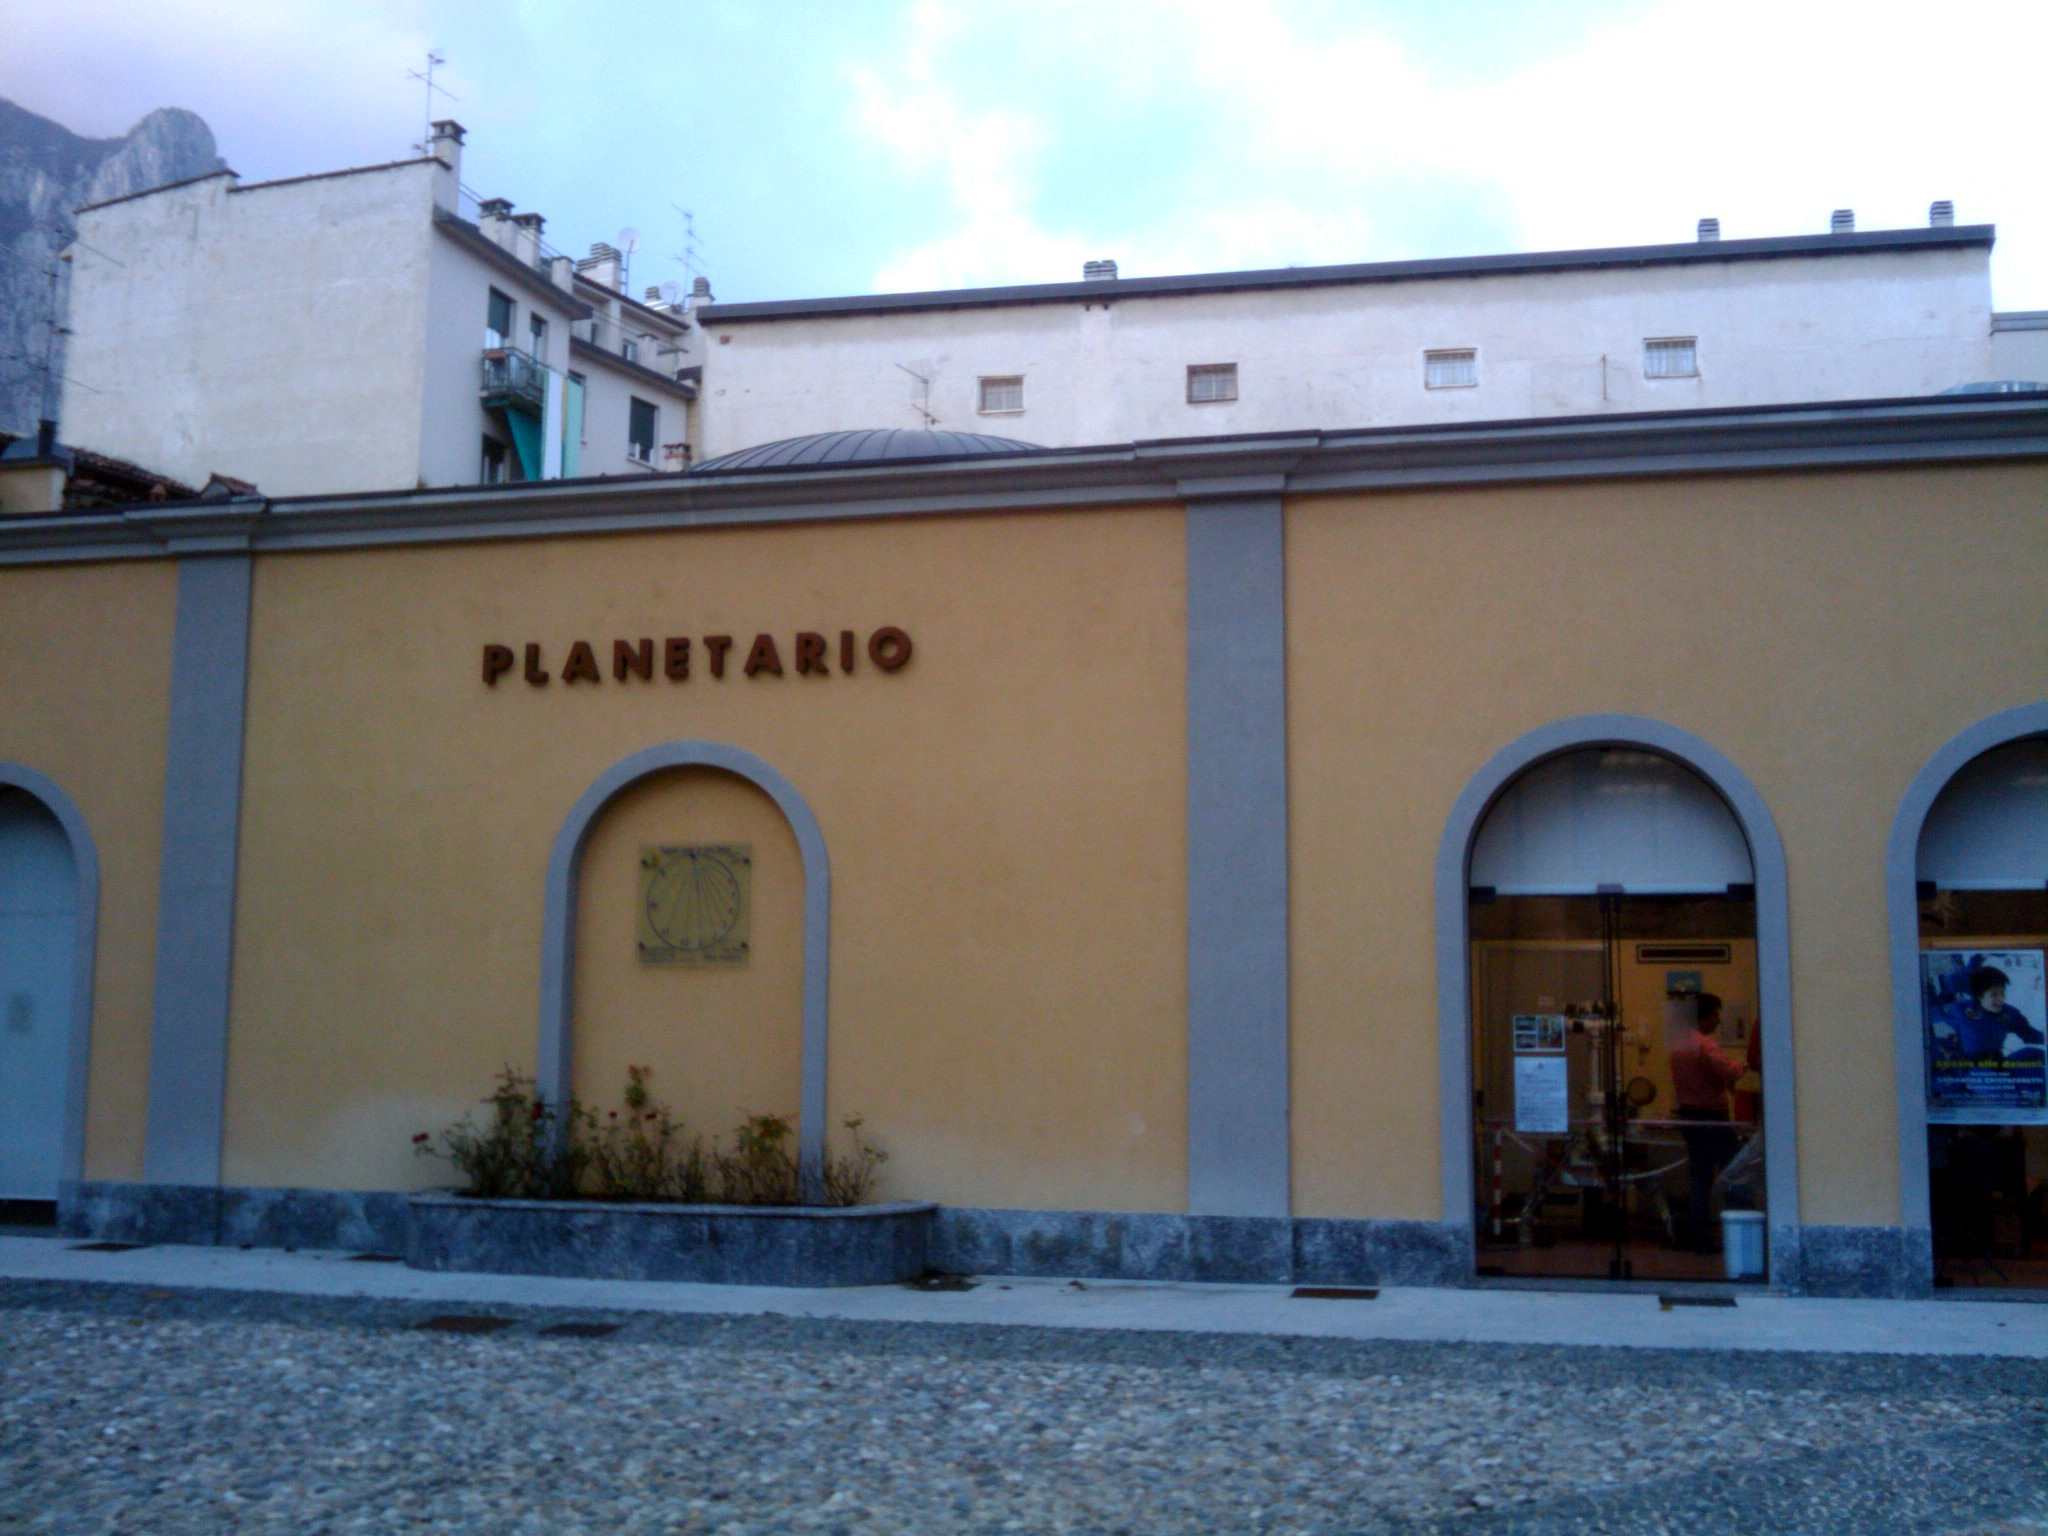 Il Planetario di Lecco. Credit: Paolo Amoroso